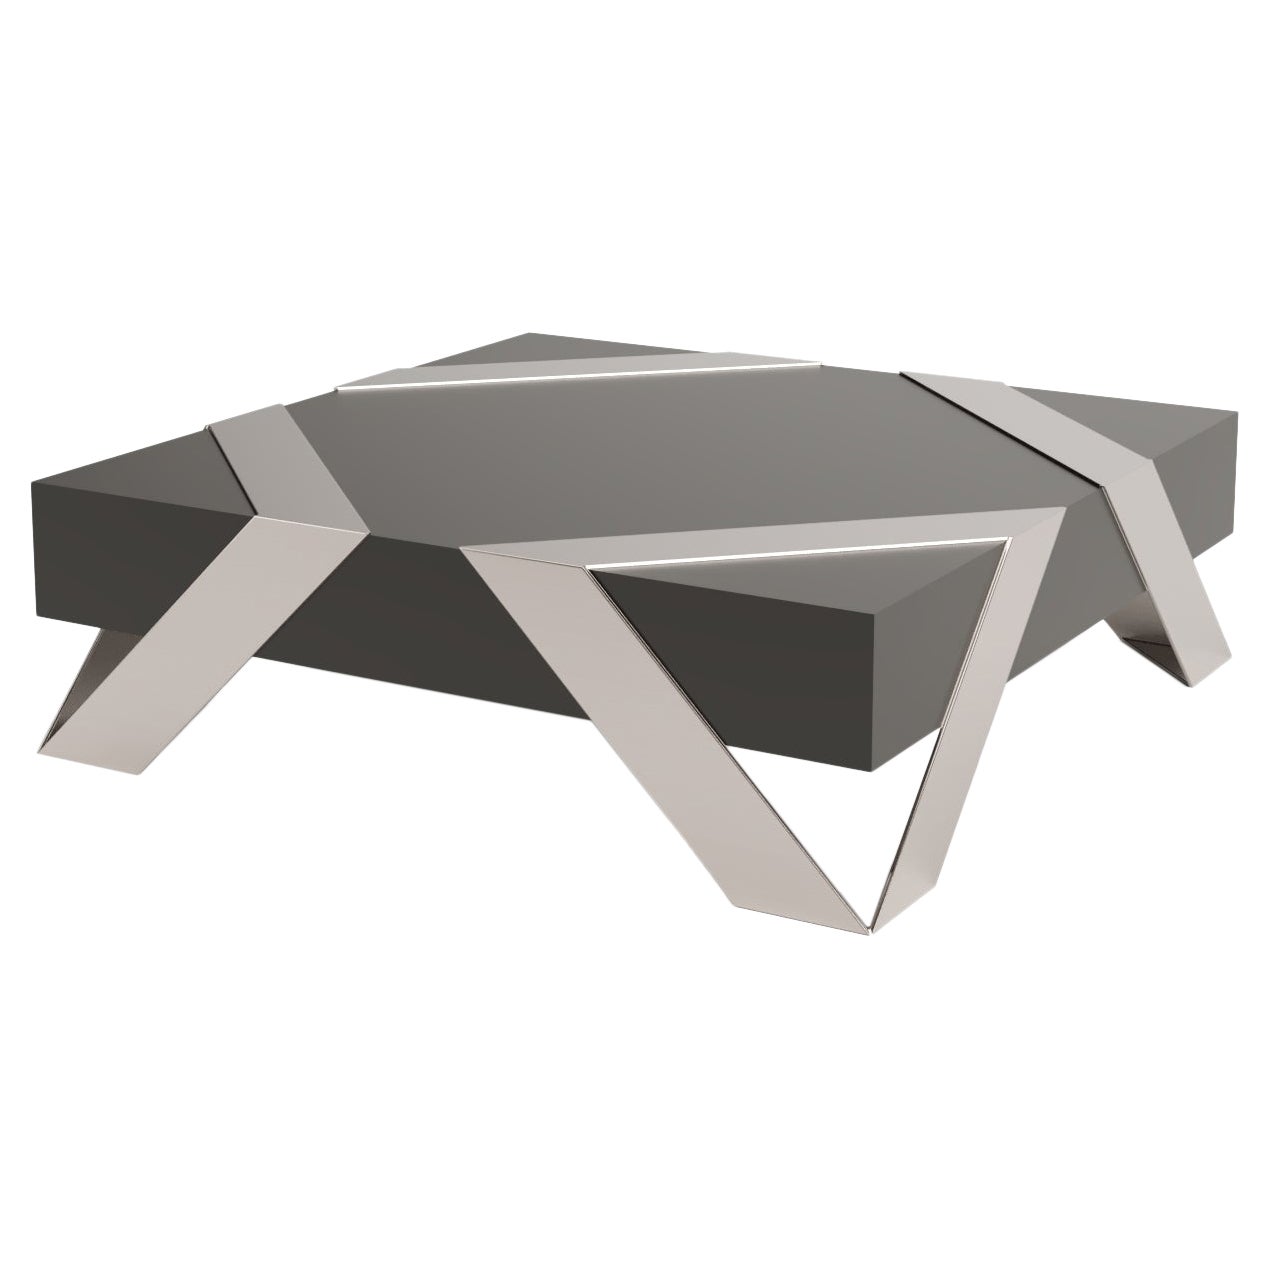 Table basse carrée moderne et minimaliste Laque noire Acier inoxydable brossé